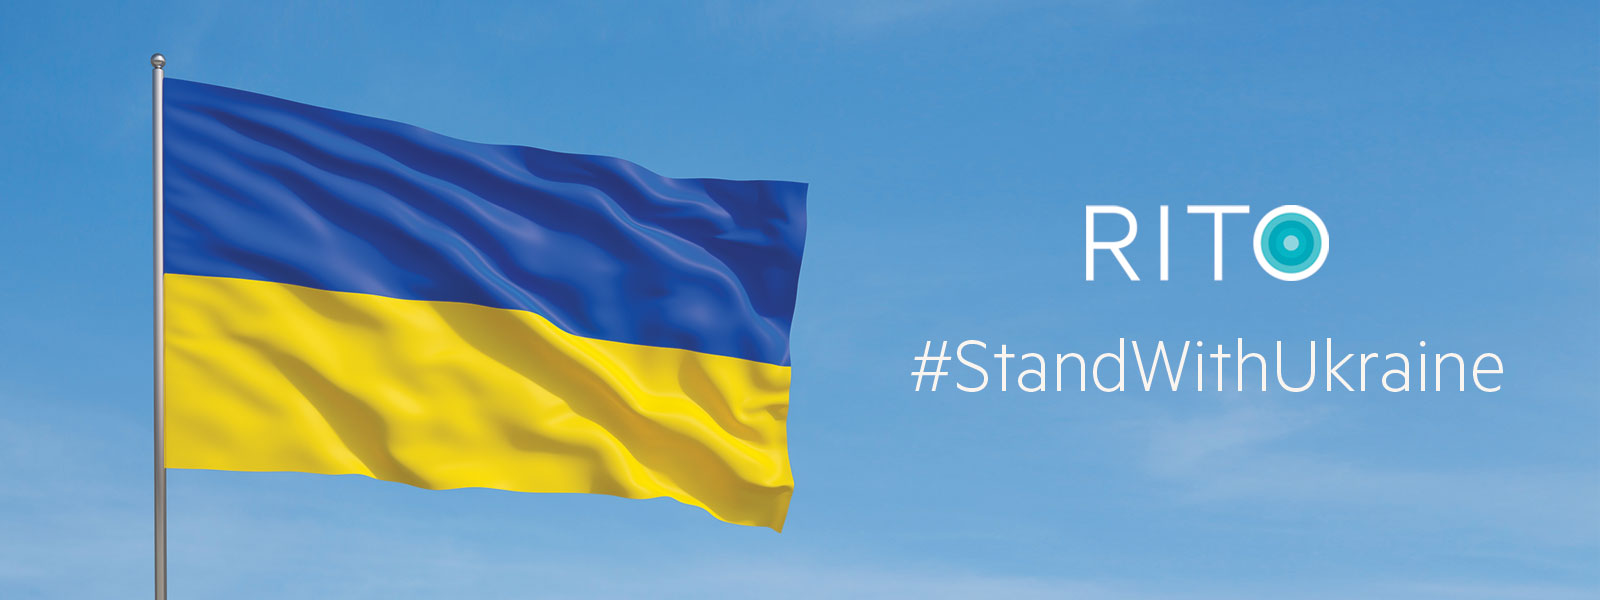 Veikalu tīkls RITO atbalsta Ukrainu cīņā par brīvību!